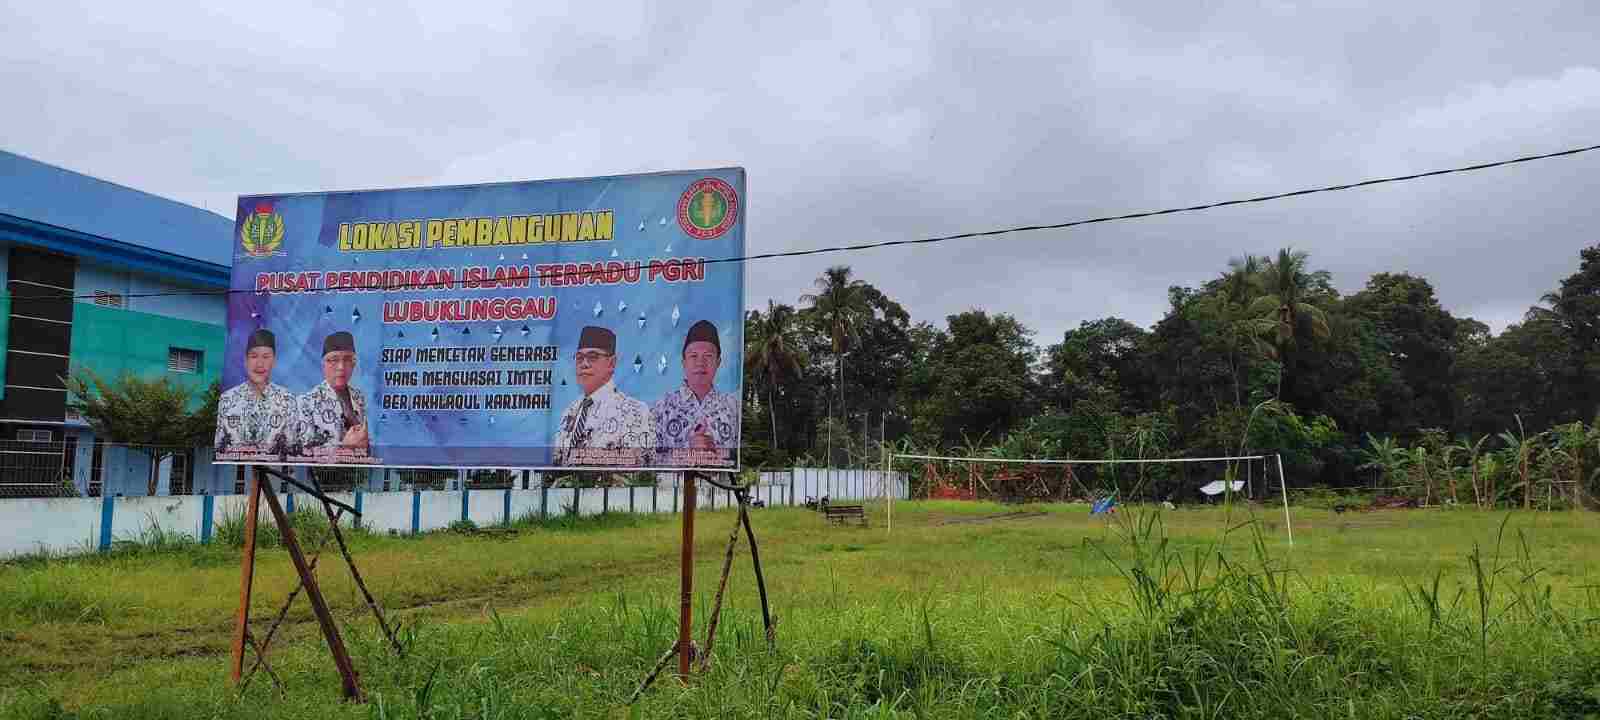 PGRI Lubuklinggau Bangun Rumah Sekolah Berbasis Islam Terpadu di Samping Gedung Guru